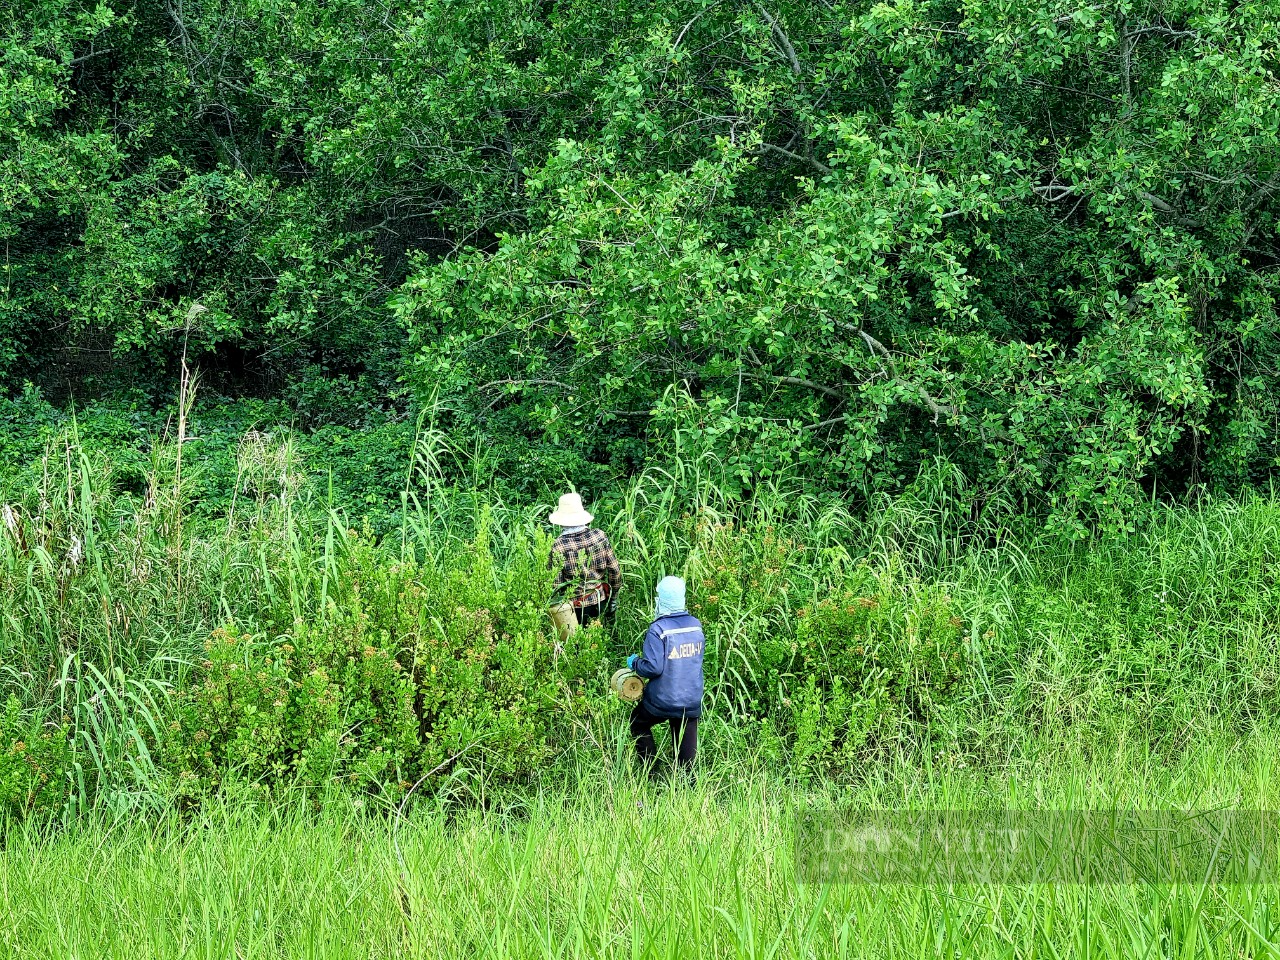 Đi tìm chữ “xanh” trong nông nghiệp: Trồng rừng hấp thụ carbon, thêm màu xanh, vừa thêm tiền tại Ninh Bình - Ảnh 3.